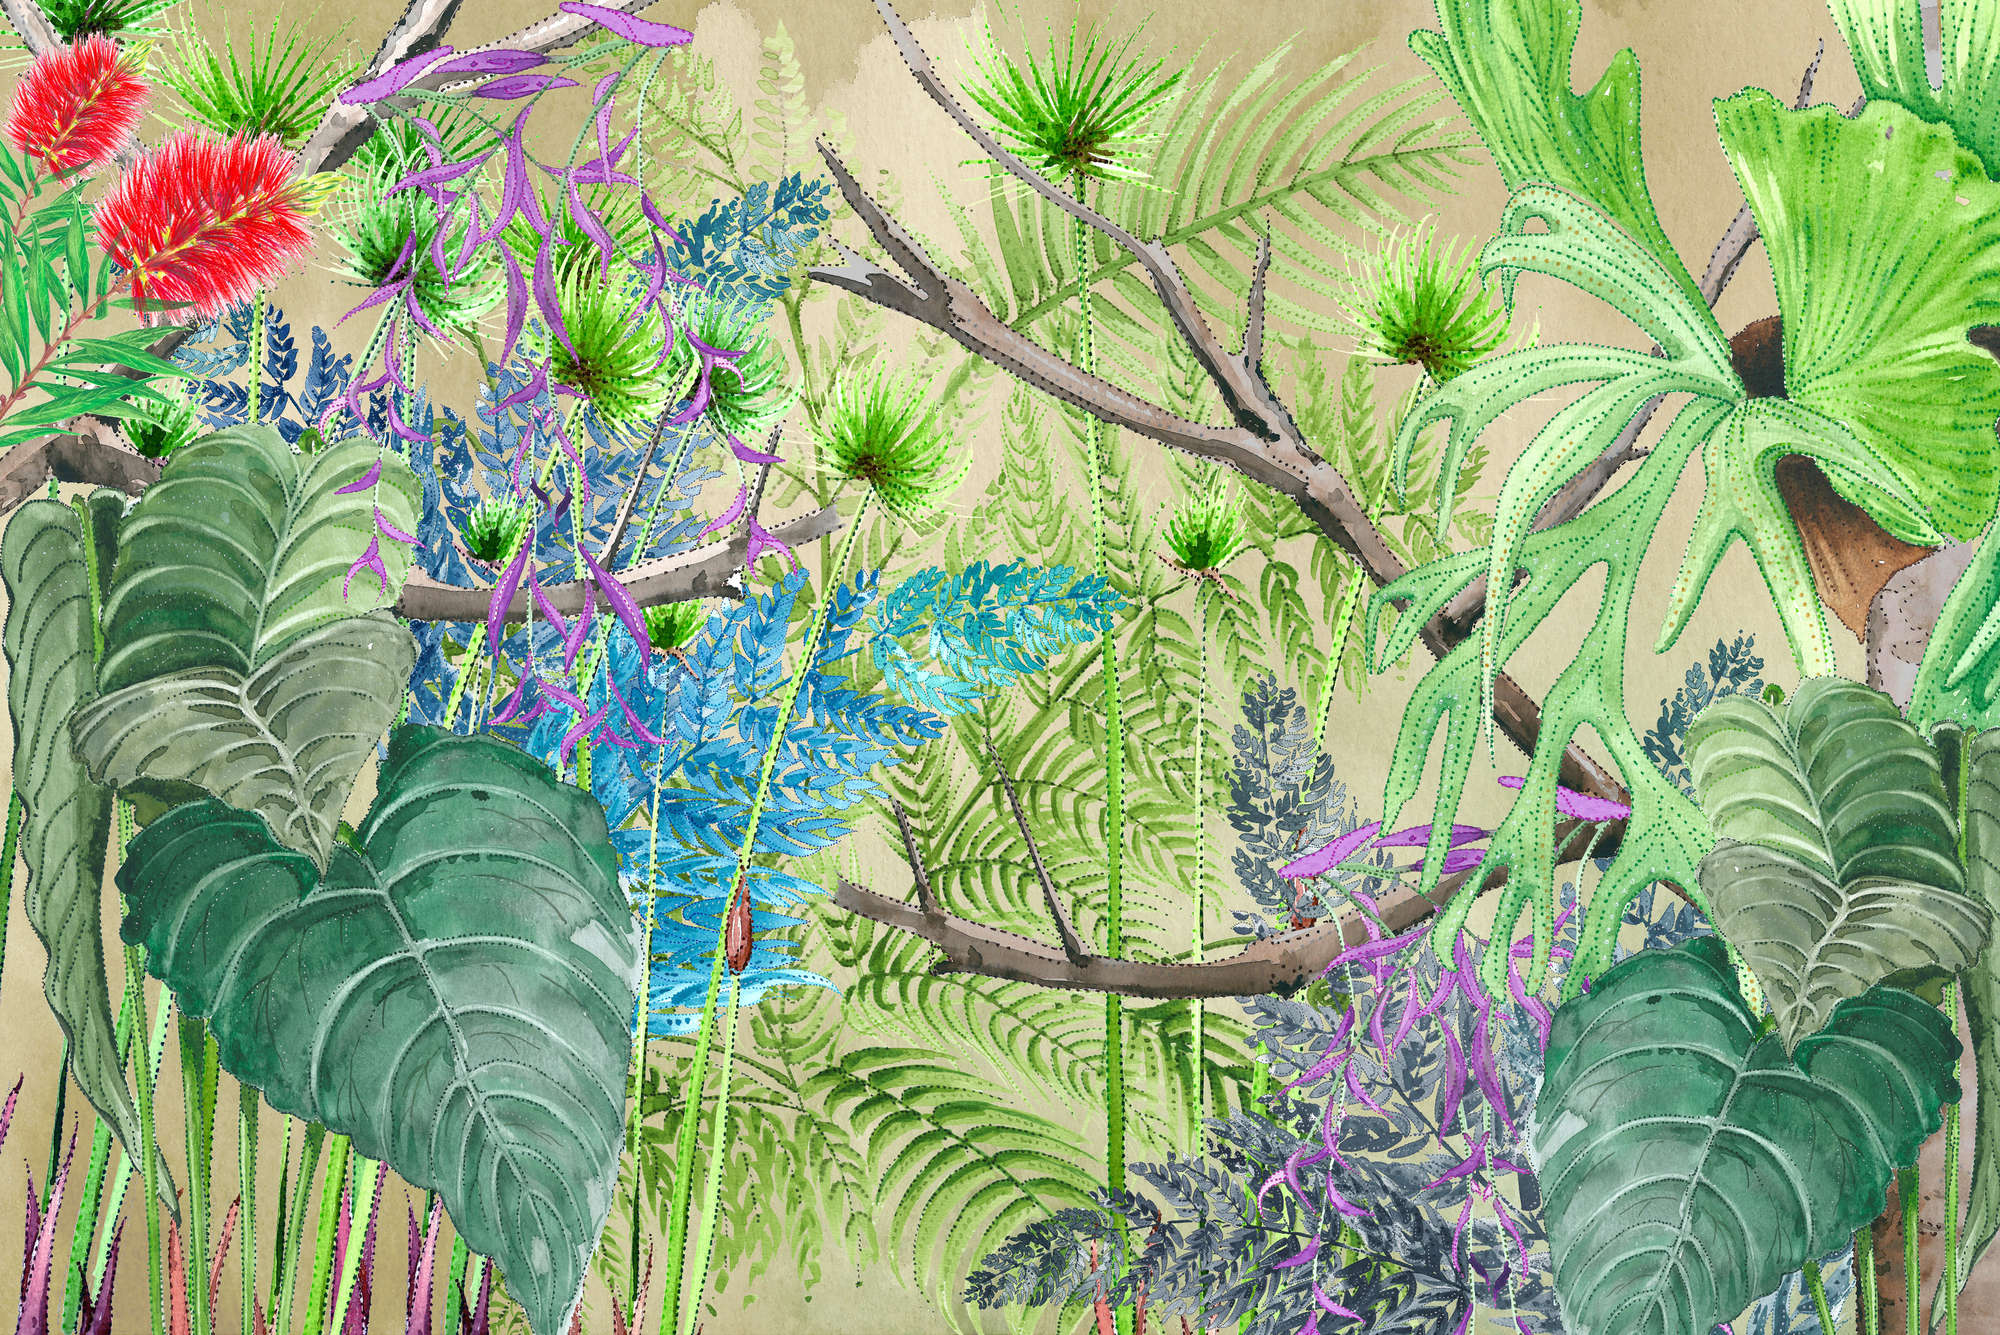             Jungle muurschildering met bloemen in blauw en groen op structuurvlieseline
        